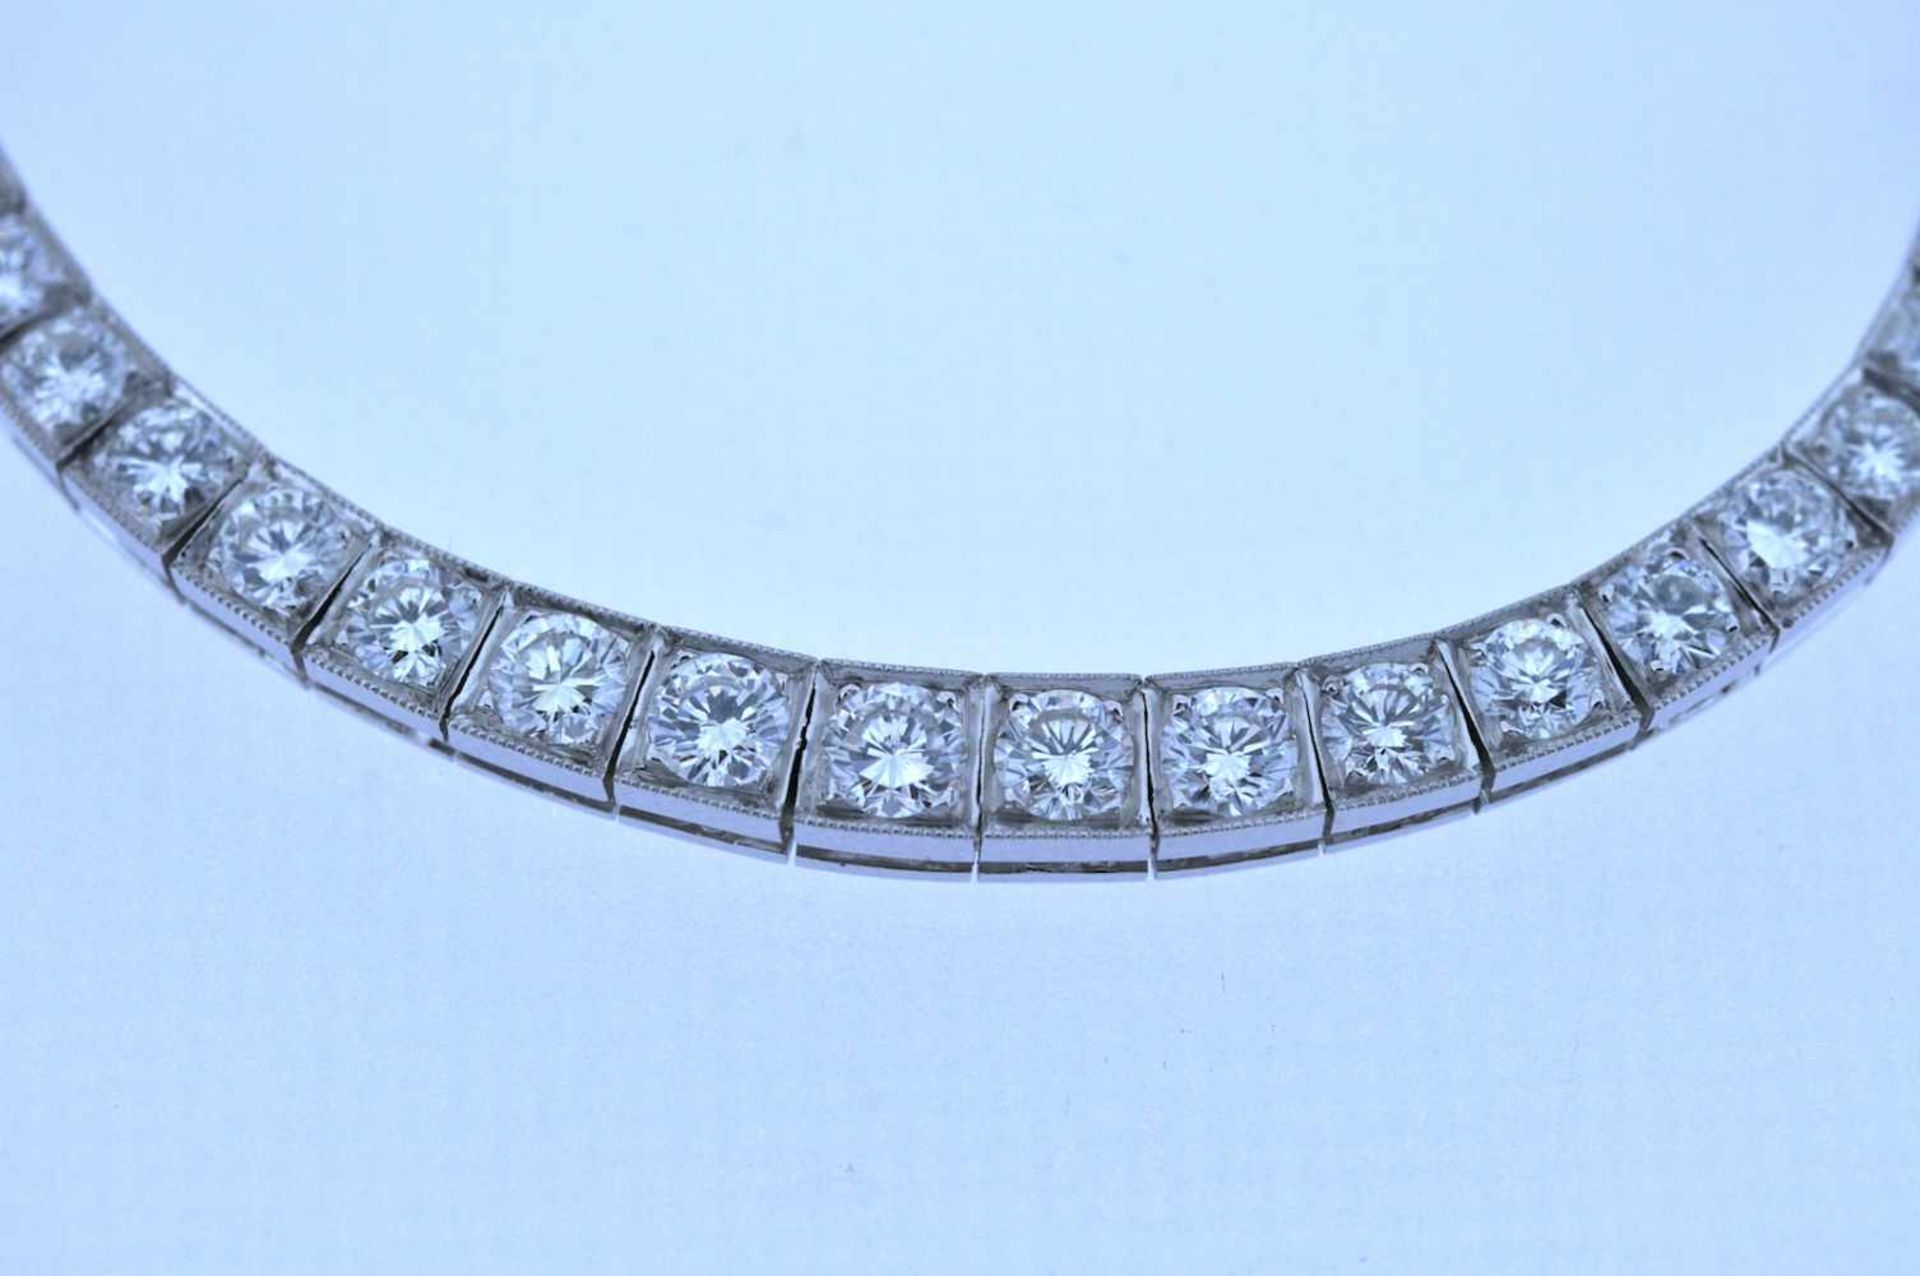 Collier Platin Brillantcollier, zus.ca. 7,6 ct, Länge ca. 45 cm, 34 g. Necklace Necklace with